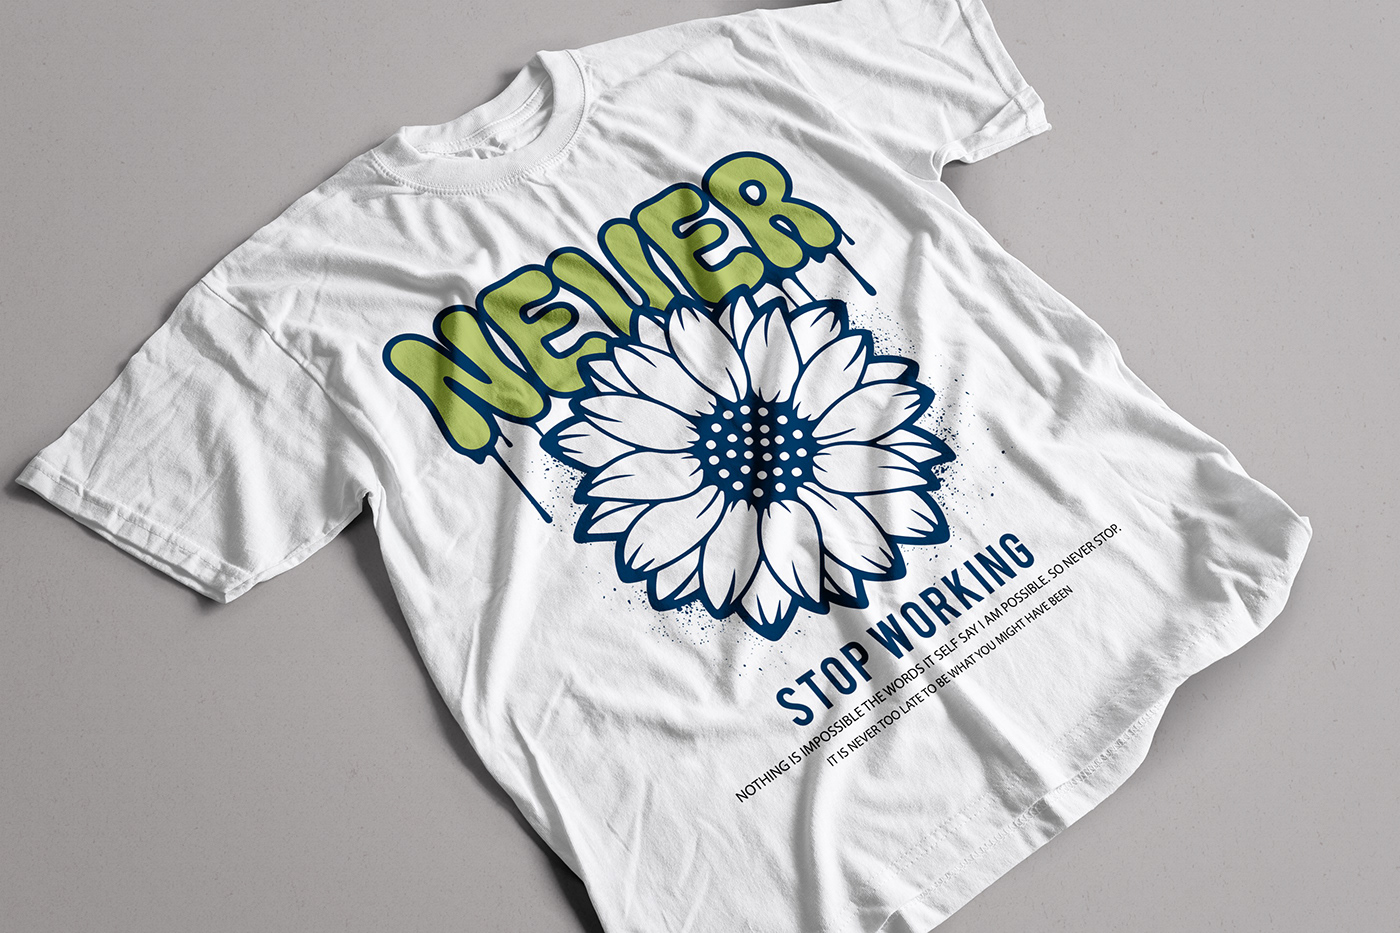 design T Shirt t shirt design sunflower Graffiti apparel streetwear merchandise flower t shirt t shirt design ideas